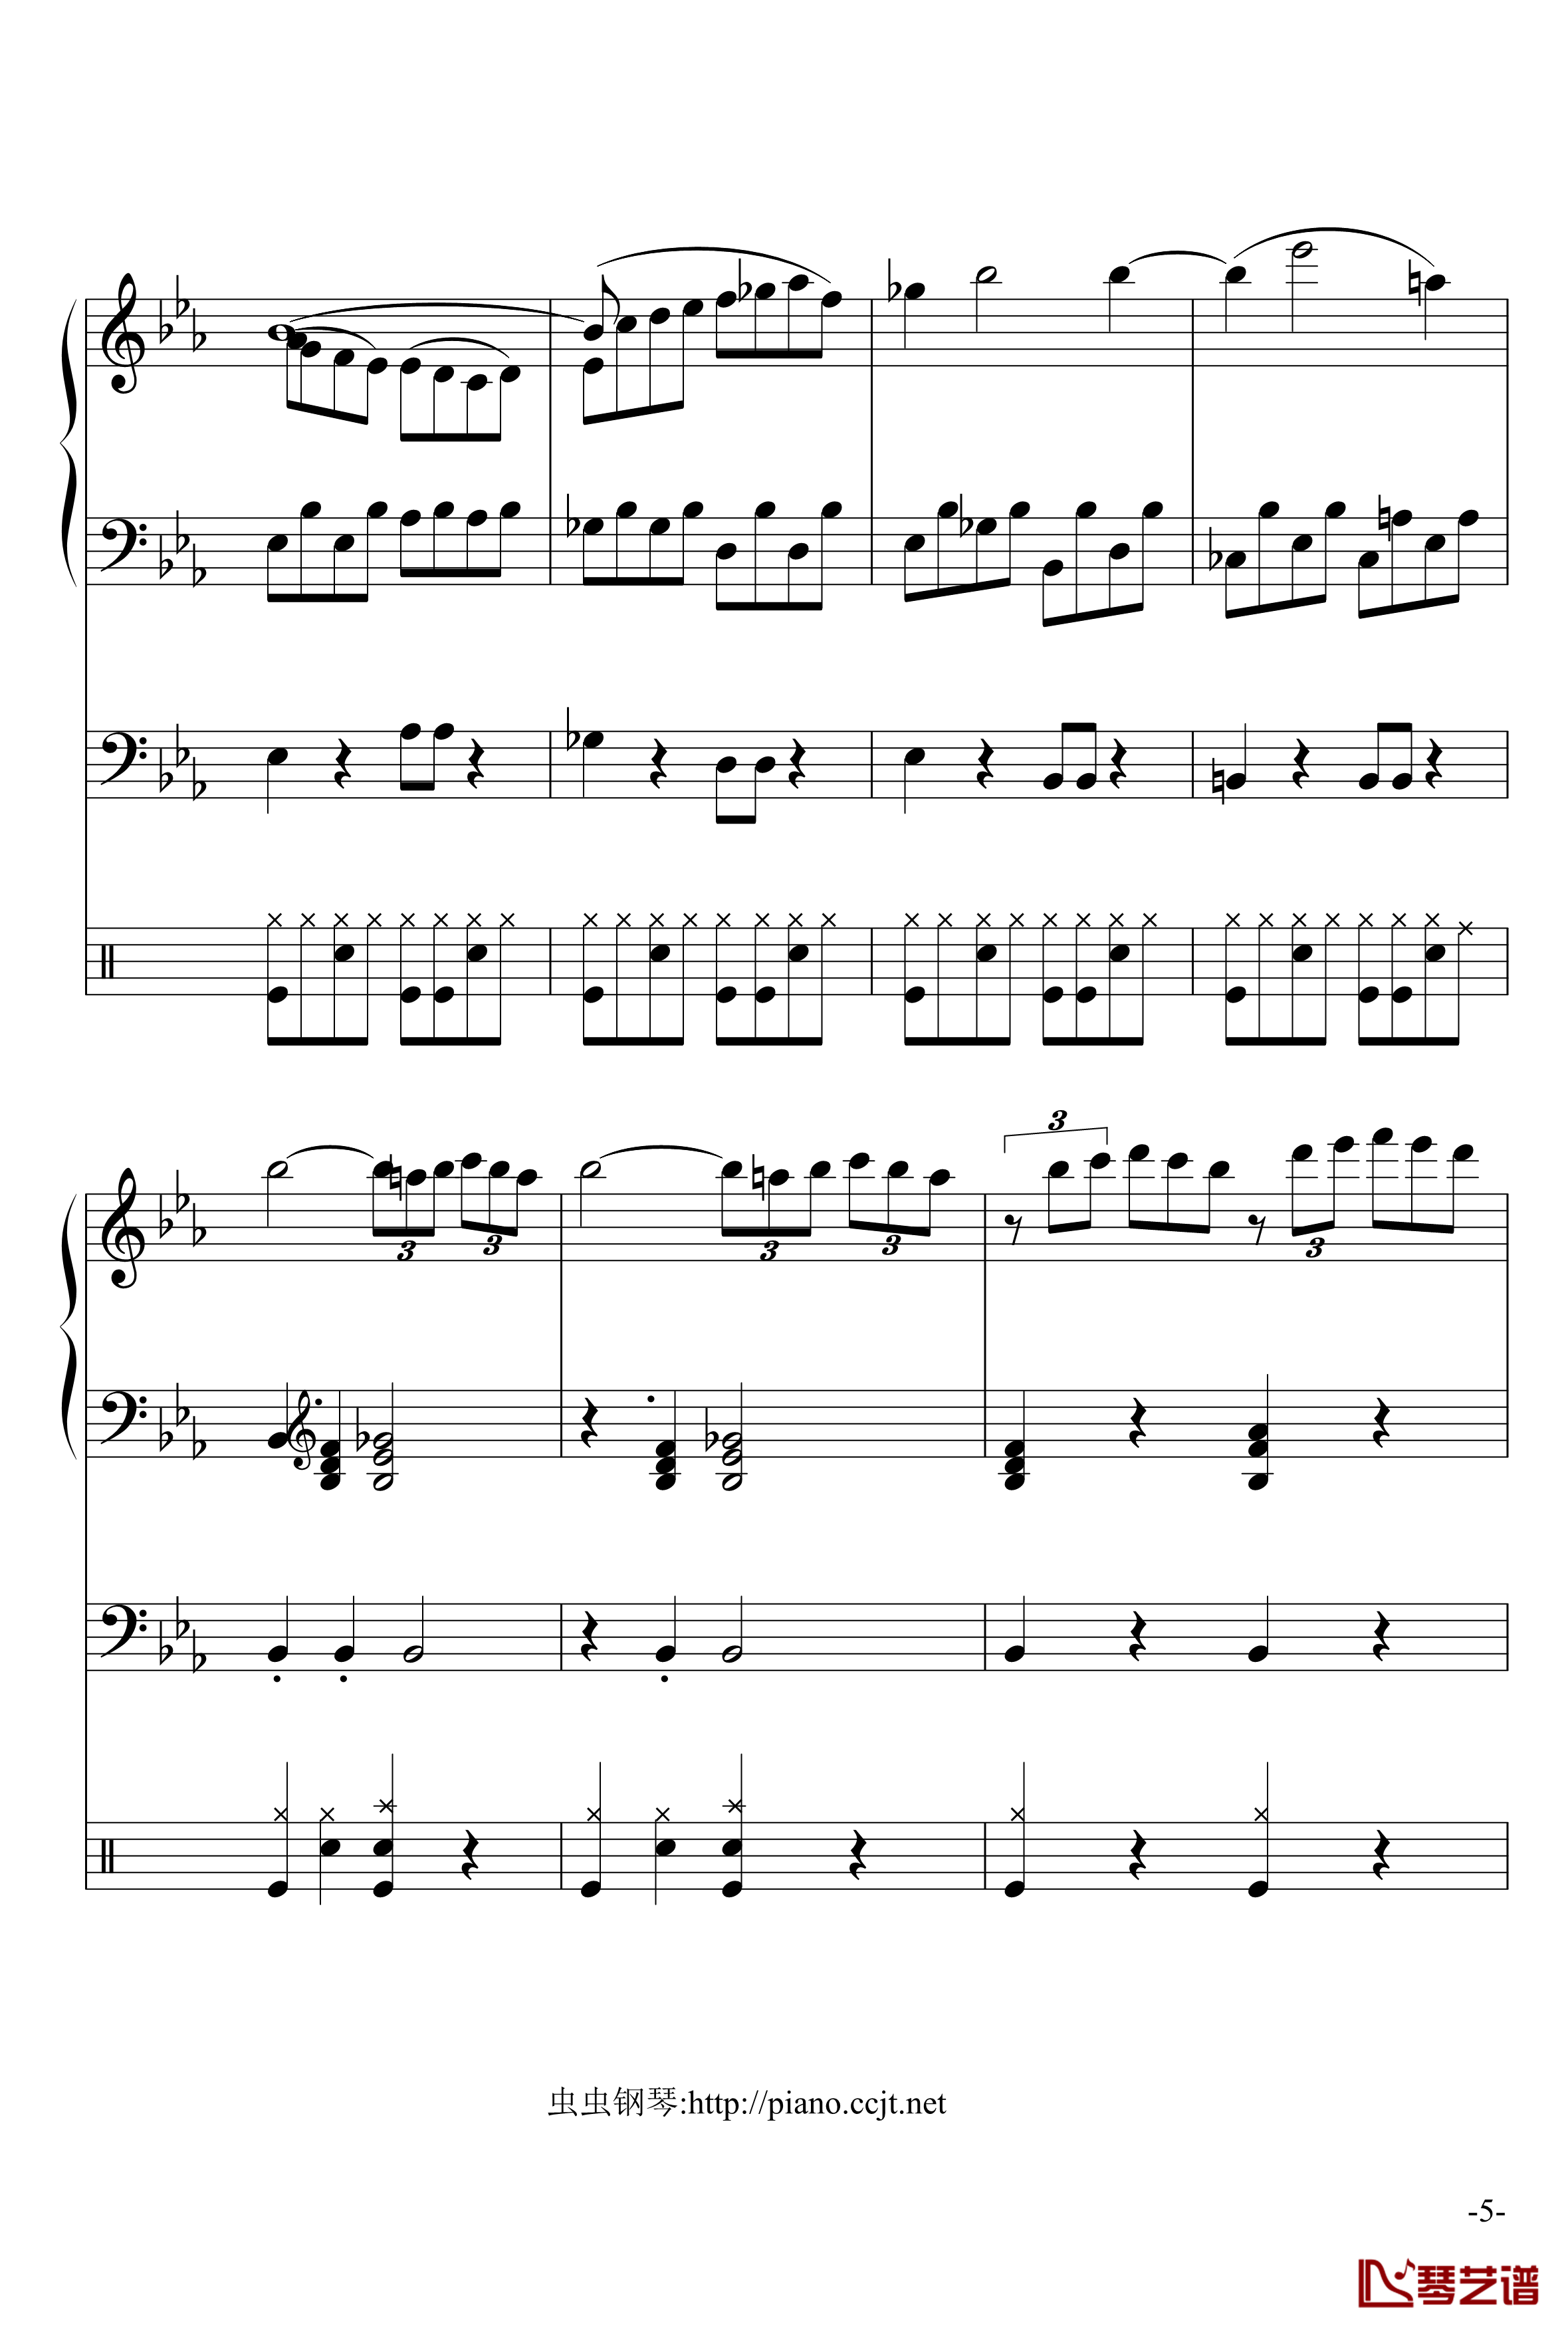 悲怆奏鸣曲钢琴谱-加小乐队-贝多芬-beethoven5